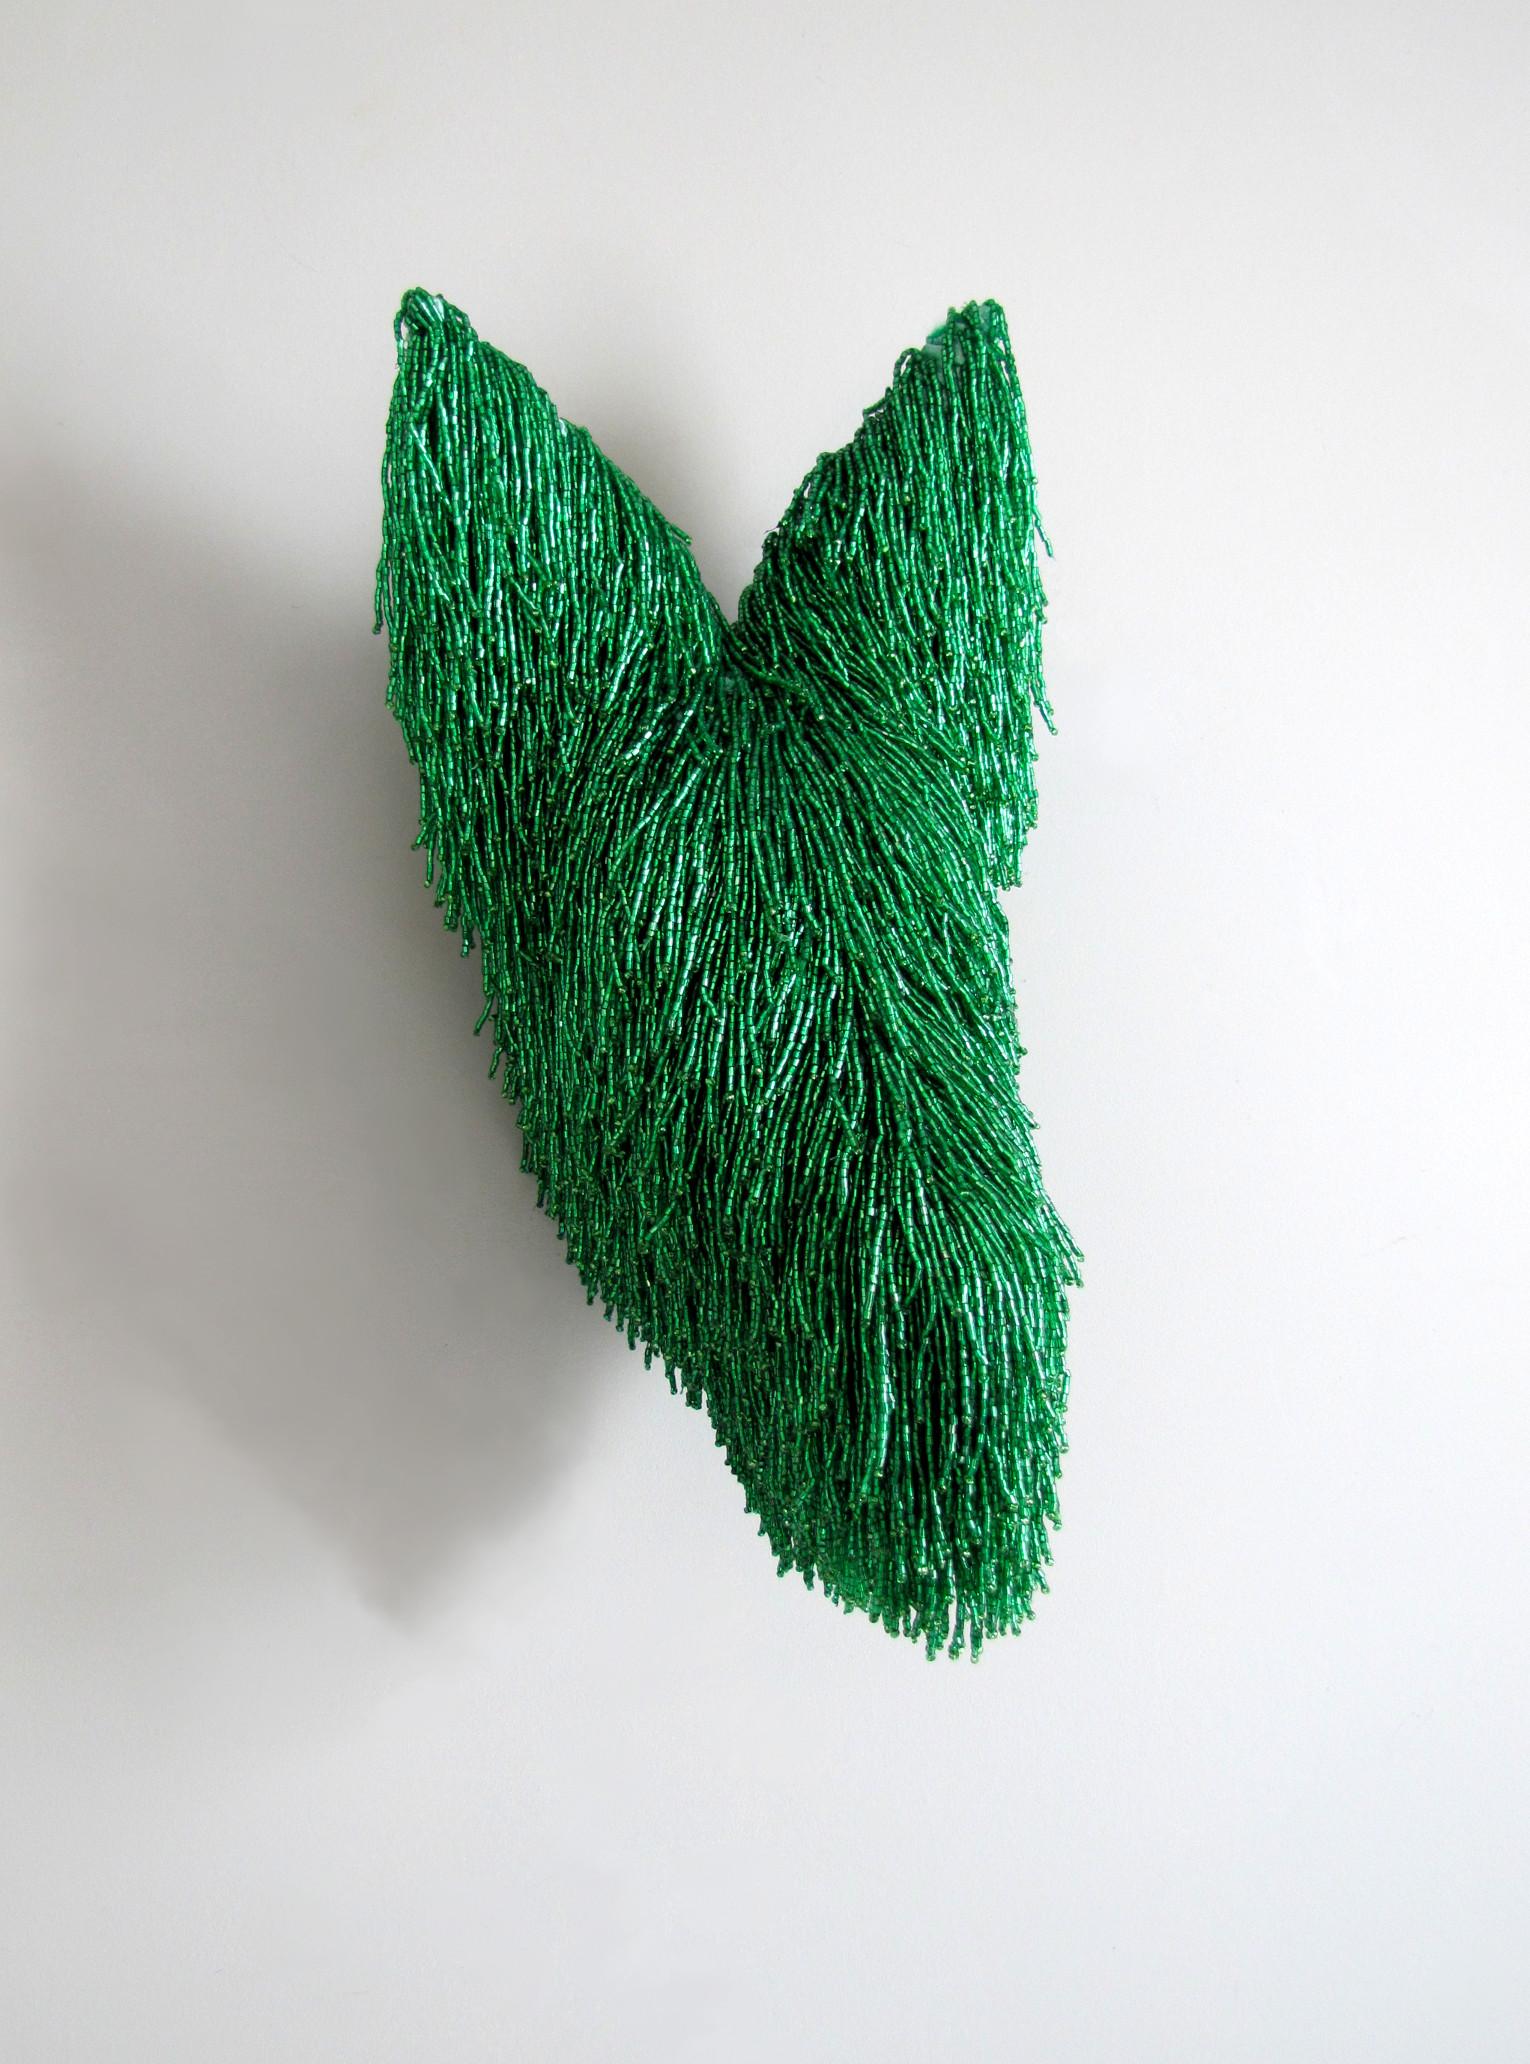 Rachel Denny Abstract Sculpture - Trickster 